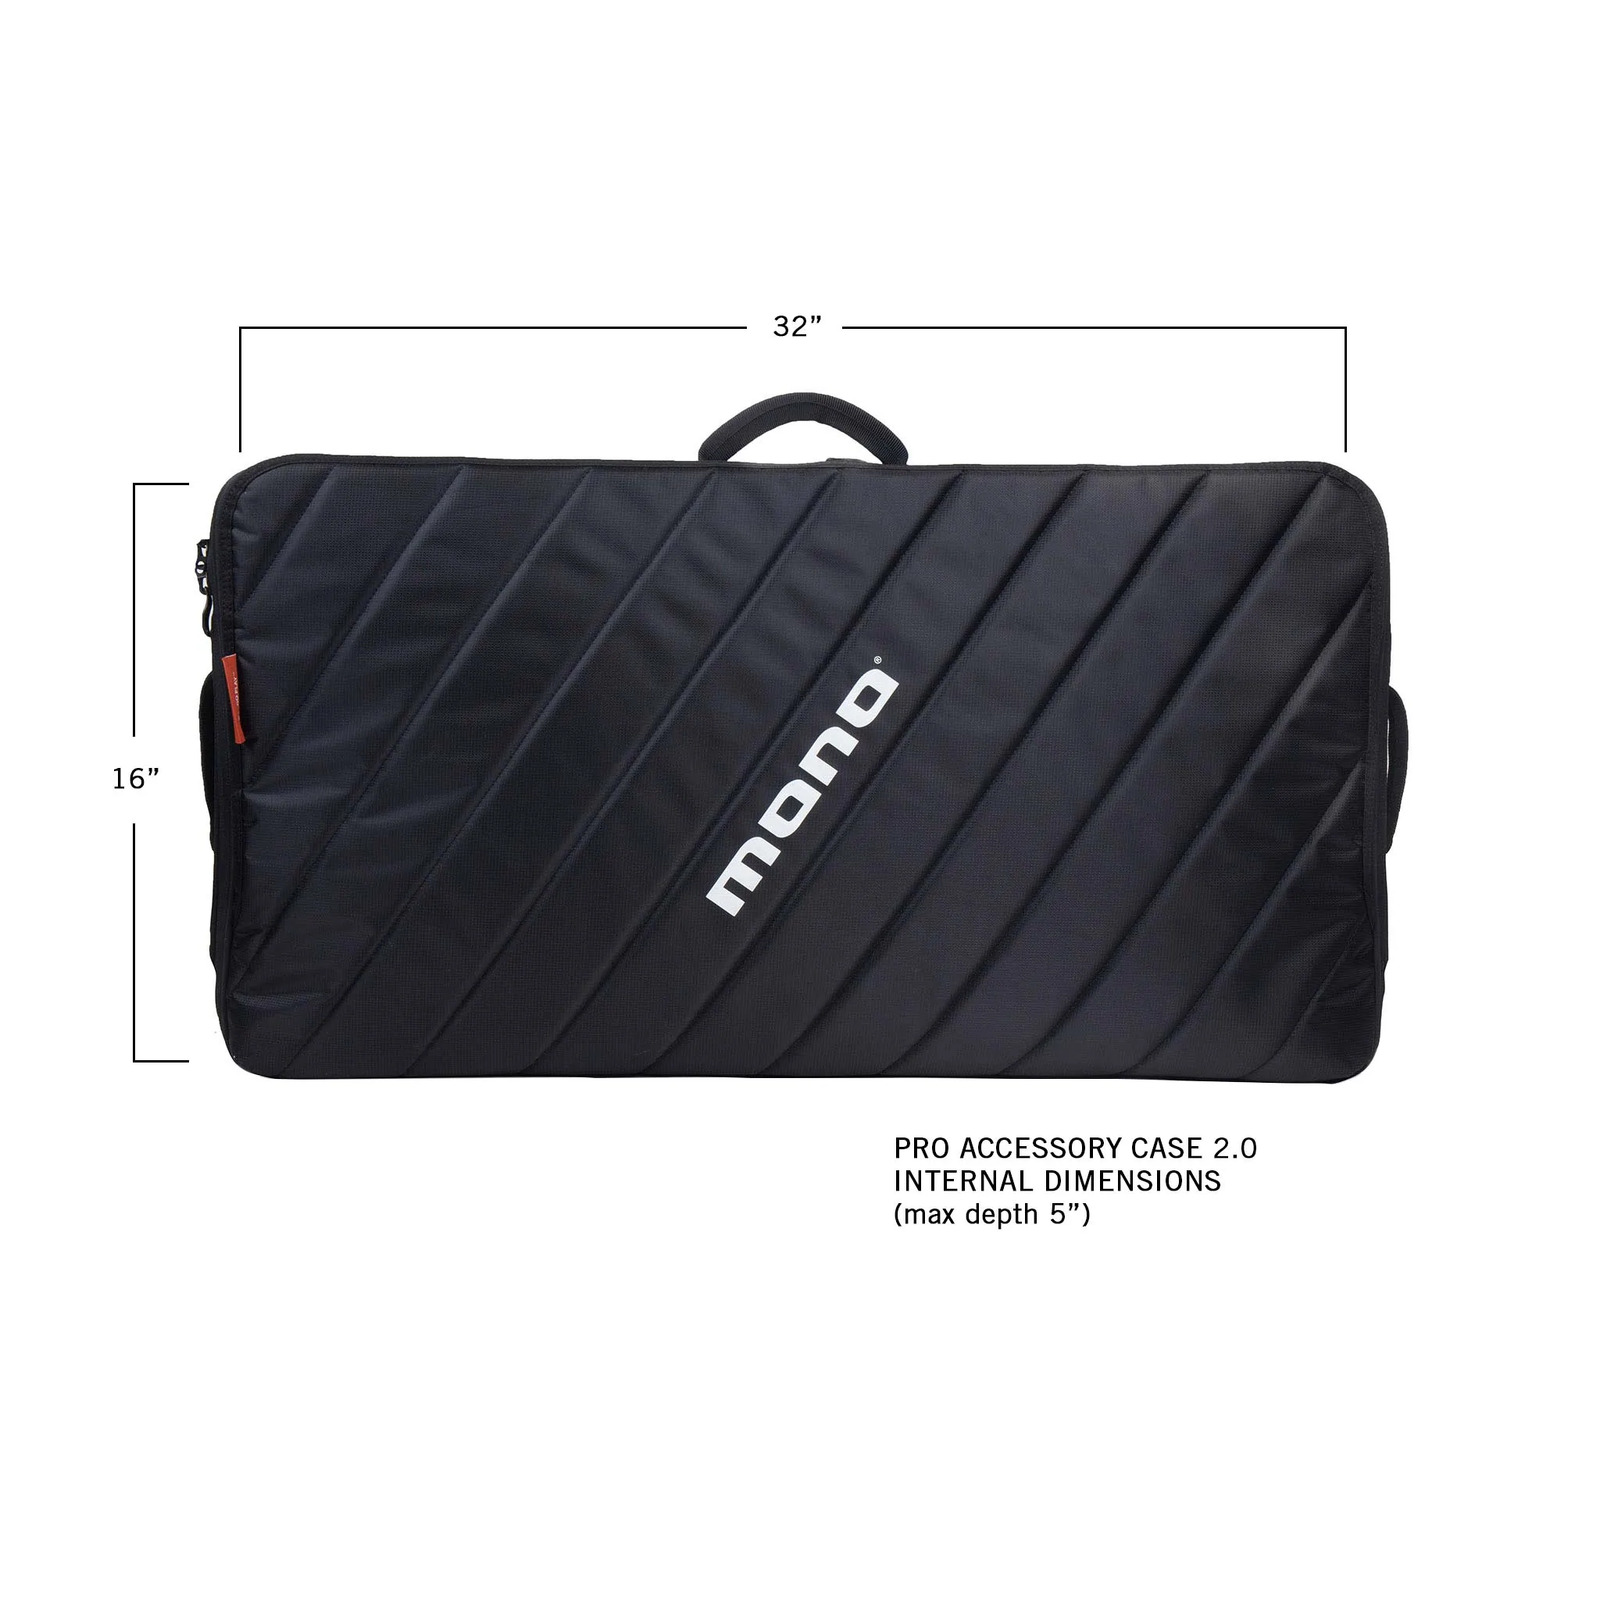 MONO Pedalboard Large & Pro Accessory Case 2.0 Black